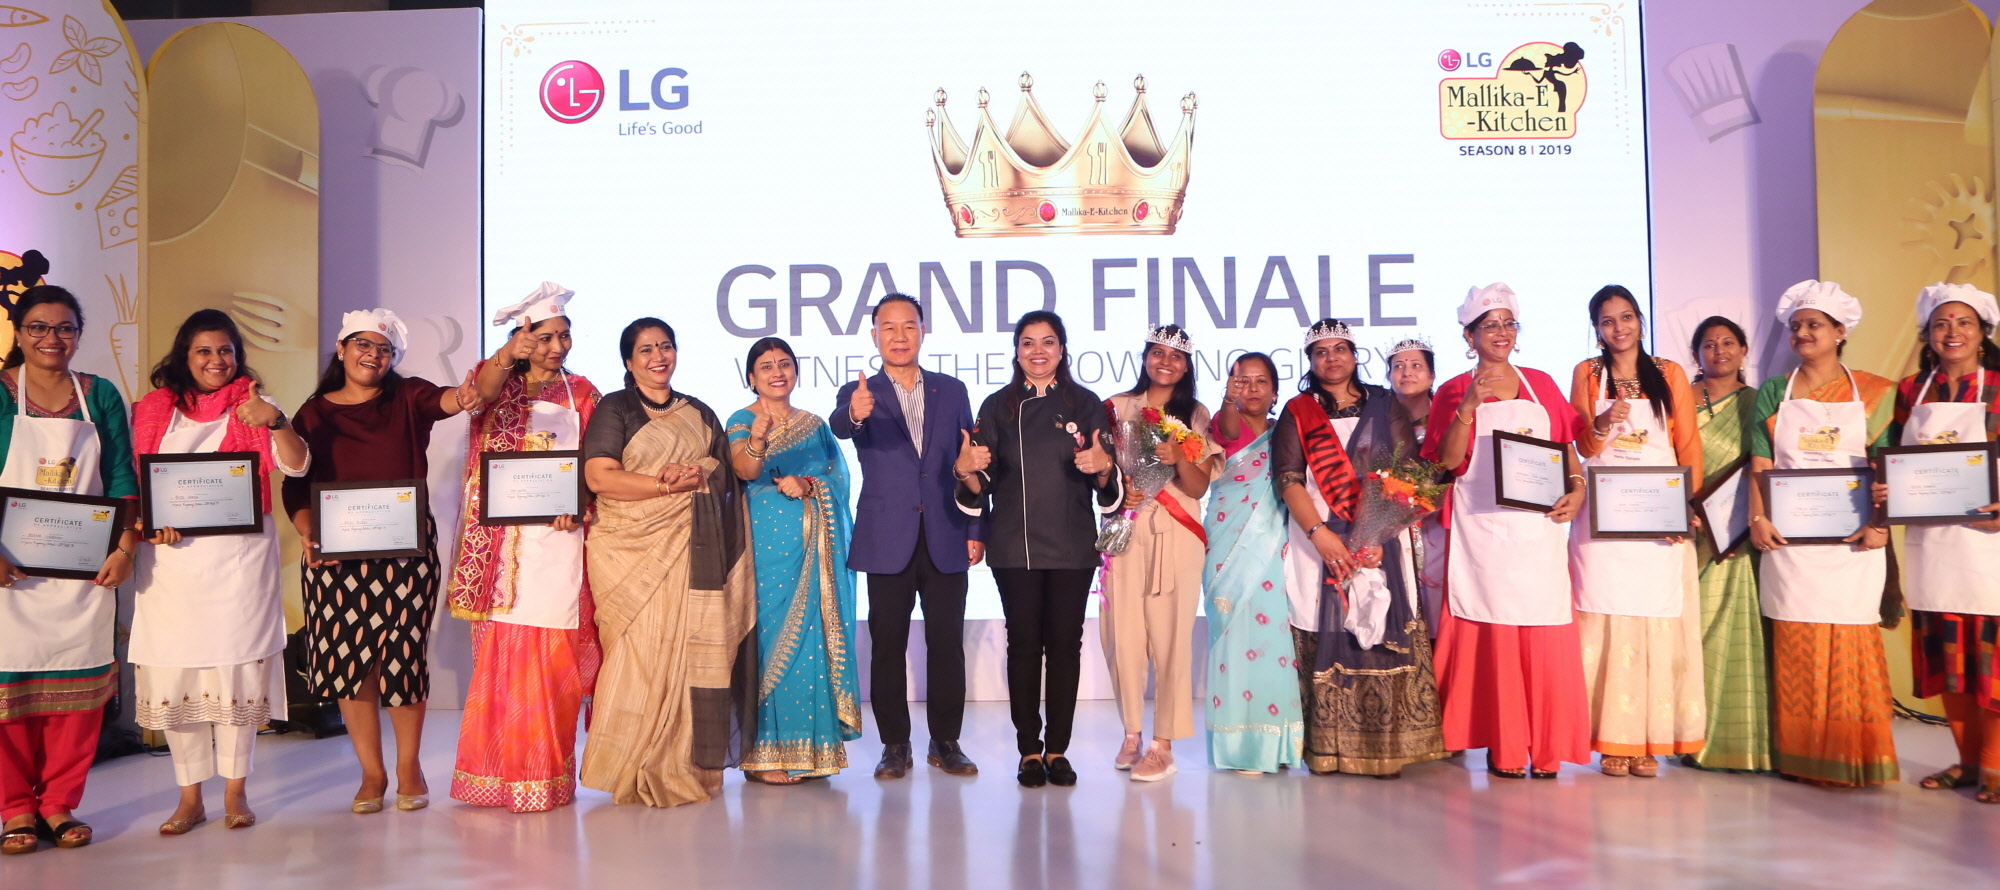  LG전자가 28일 인도 뉴델리 하야트호텔에서 건강한 요리문화를 확산하기 위해 'LG 요리 경연대회'를 개최했다. LG전자 인도법인장 김기완 부사장(왼쪽에서 일곱번째)이 참가자들과 기념촬영을 하고 있다.    